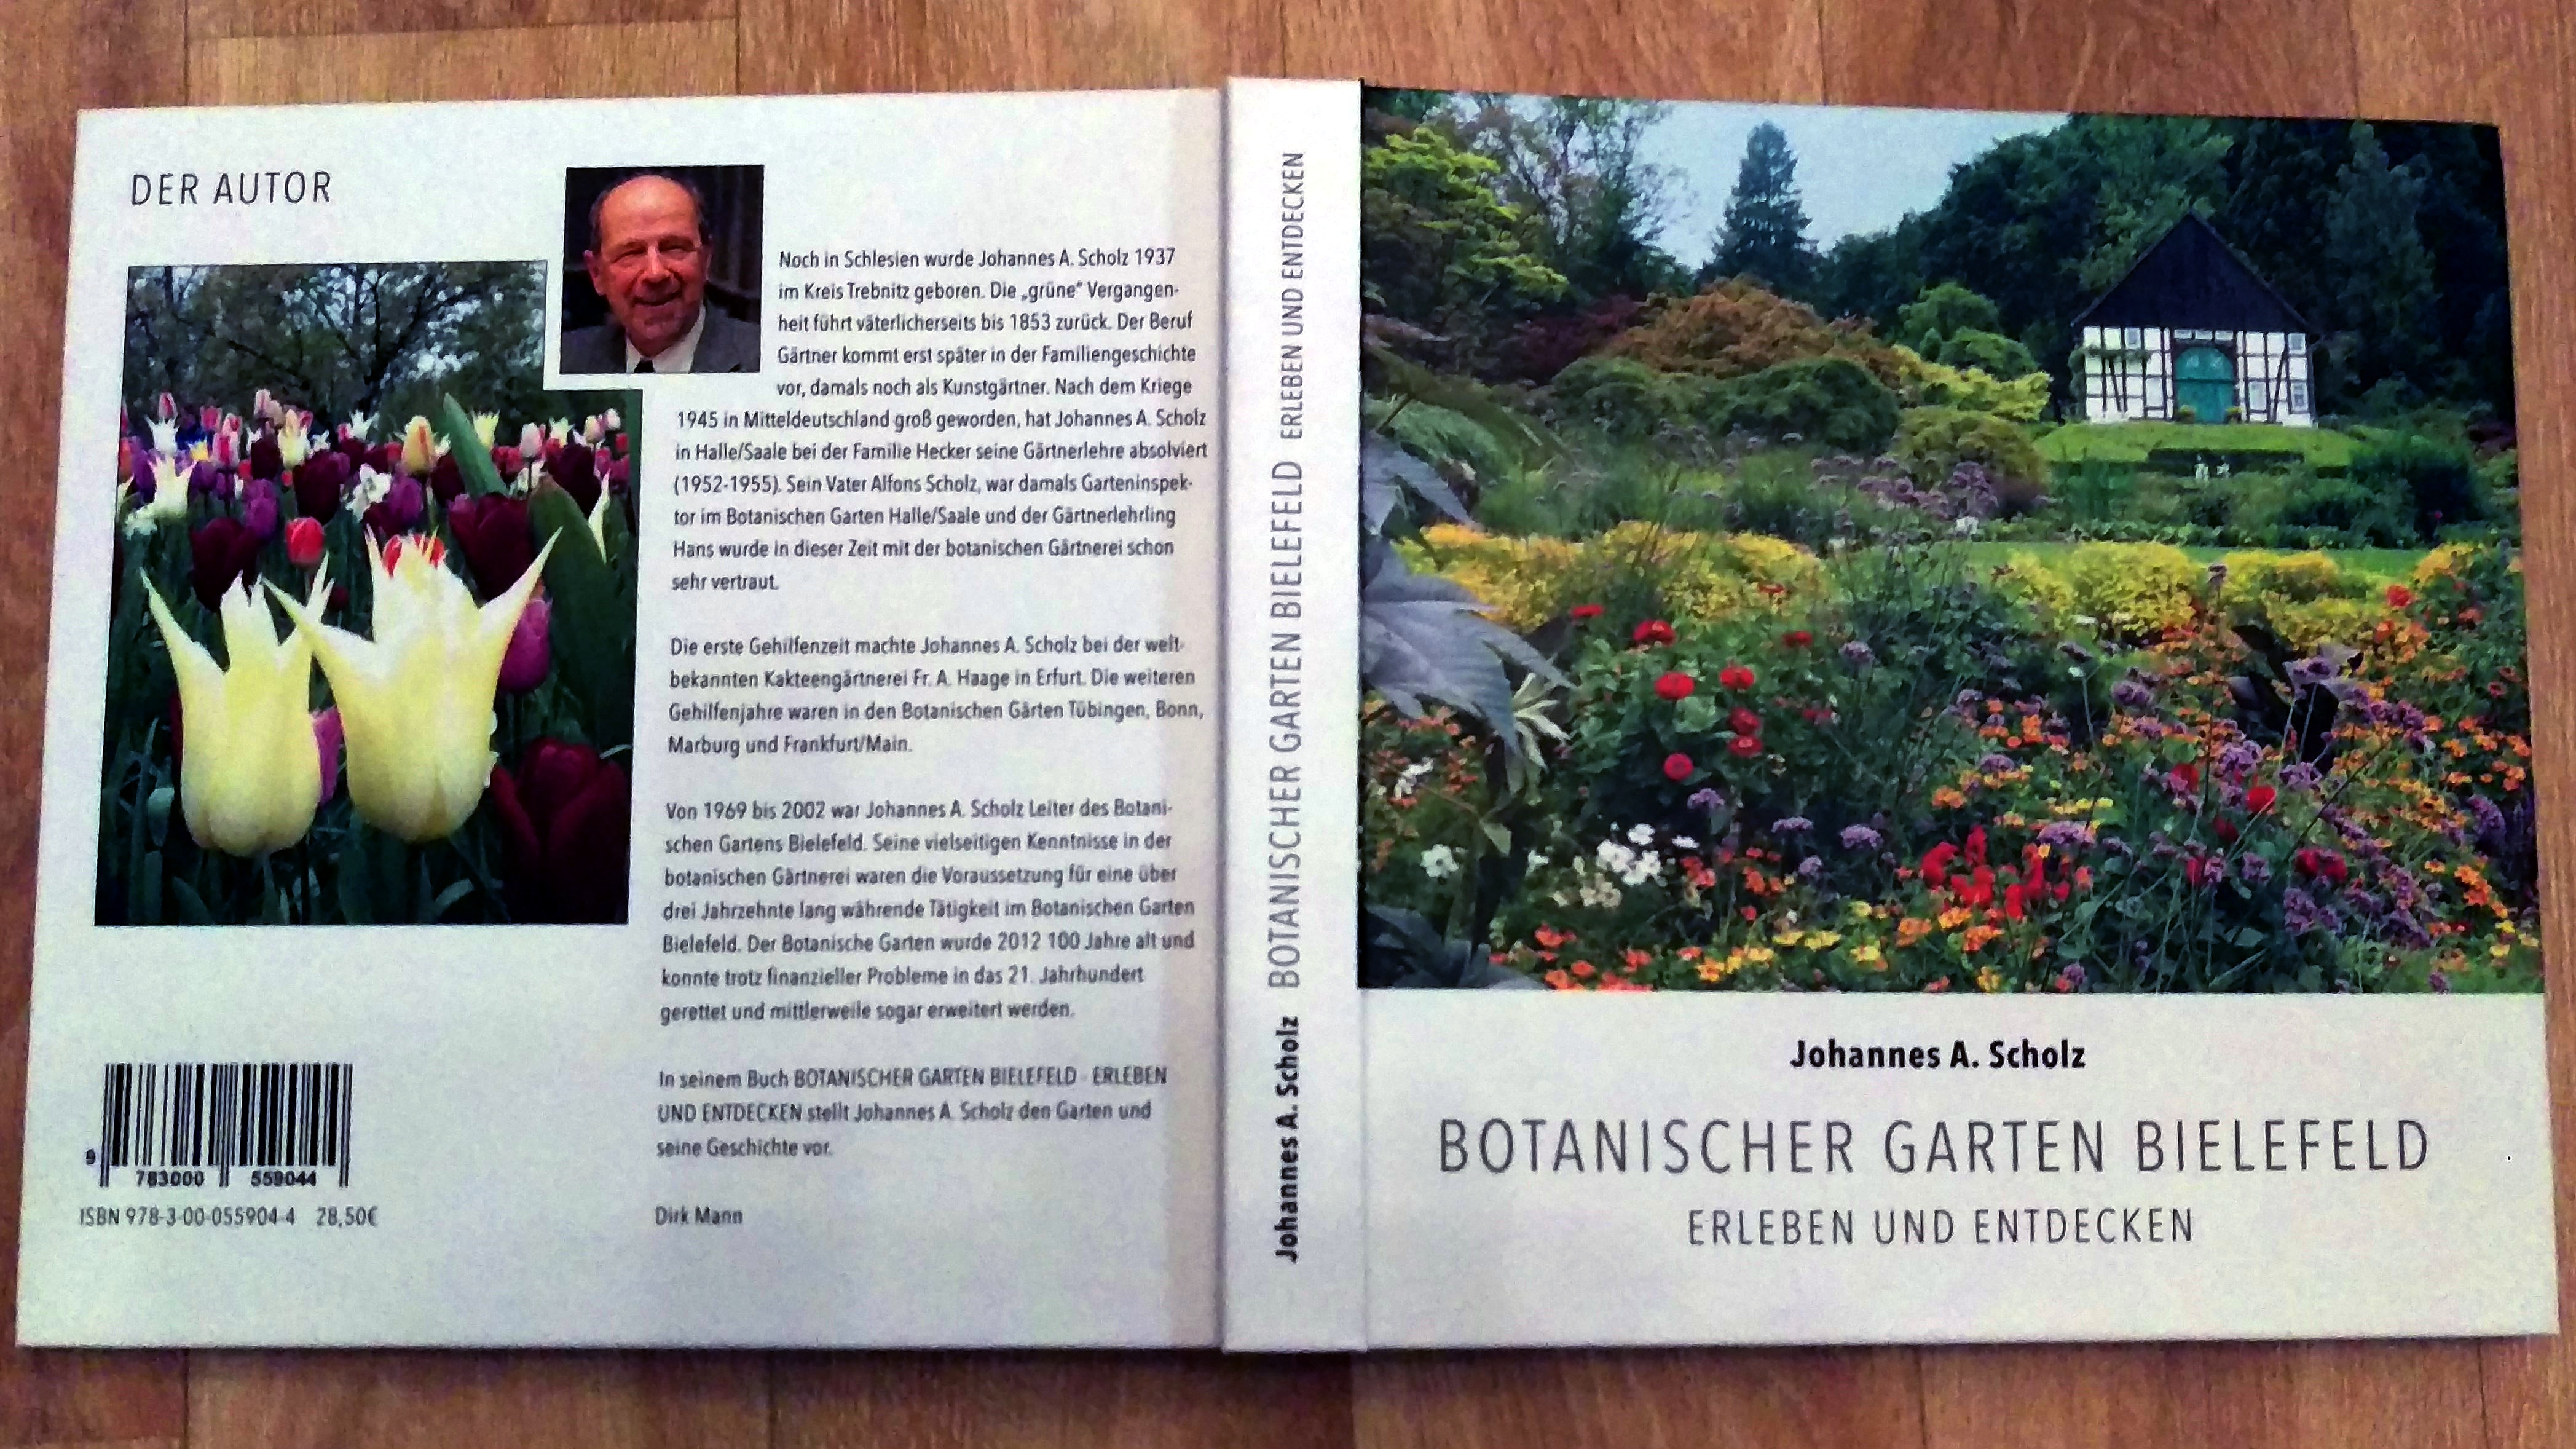 Botanischer Garten Bielefeld, Erleben und entdecken